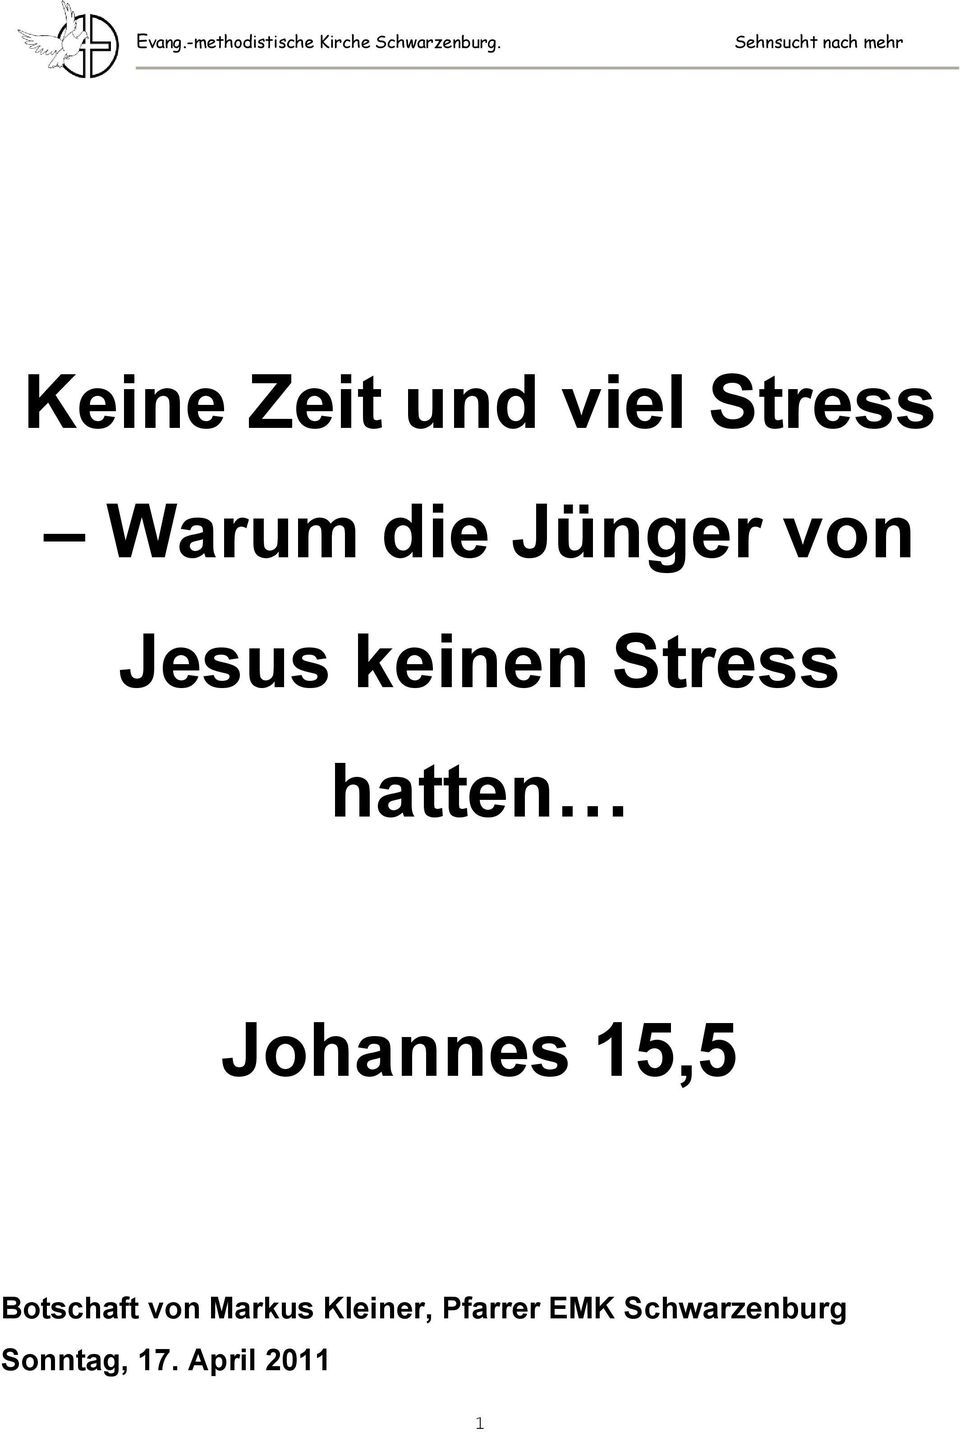 Jünger von Jesus keinen Stress hatten Johannes 15,5